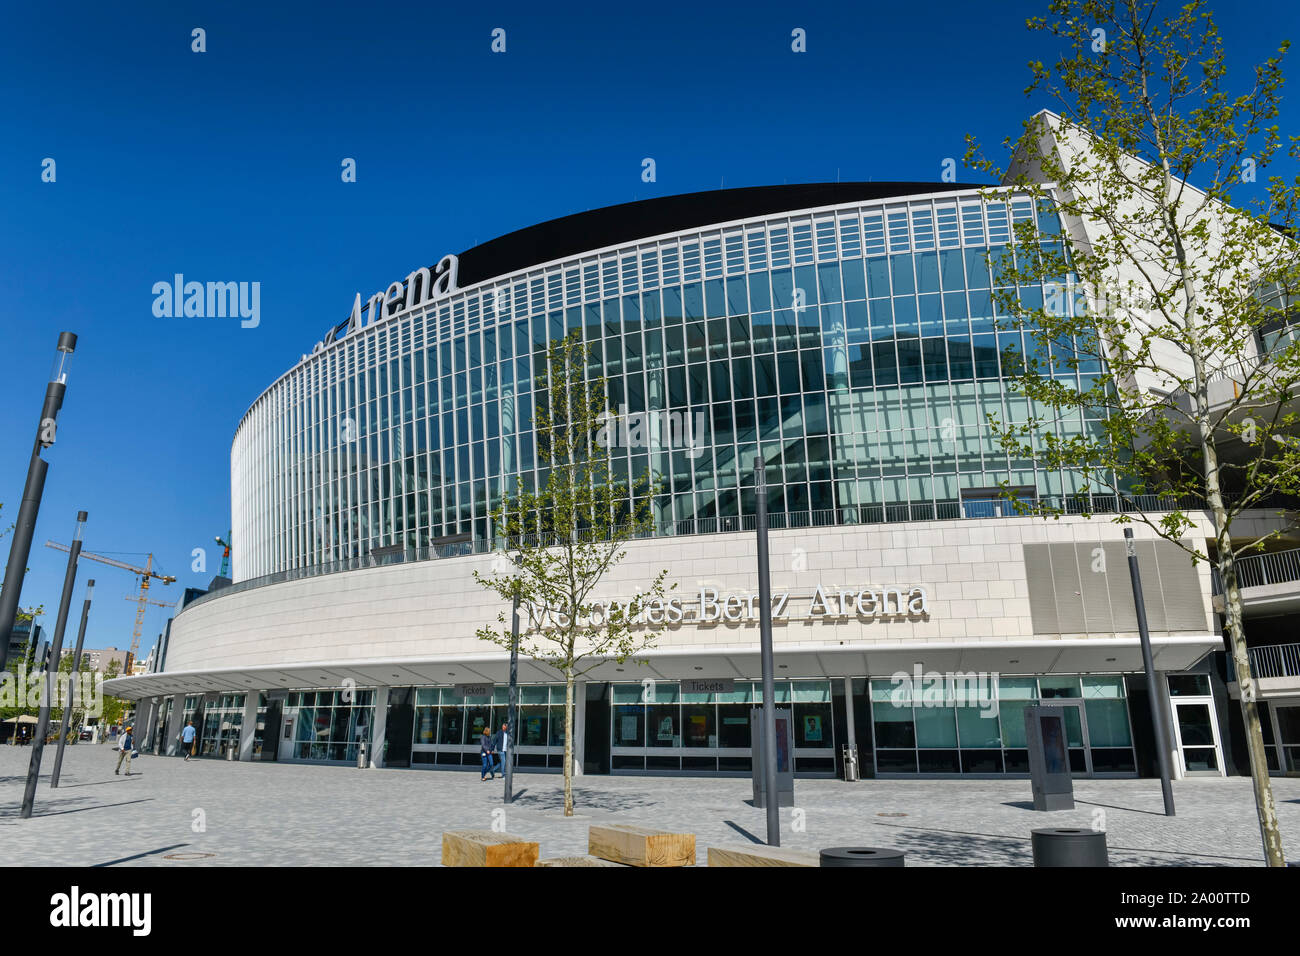 Mercedes-Benz Arena, Mercedes-Platz, Friedrichshain, Berlin, Deutschland Stock Photo